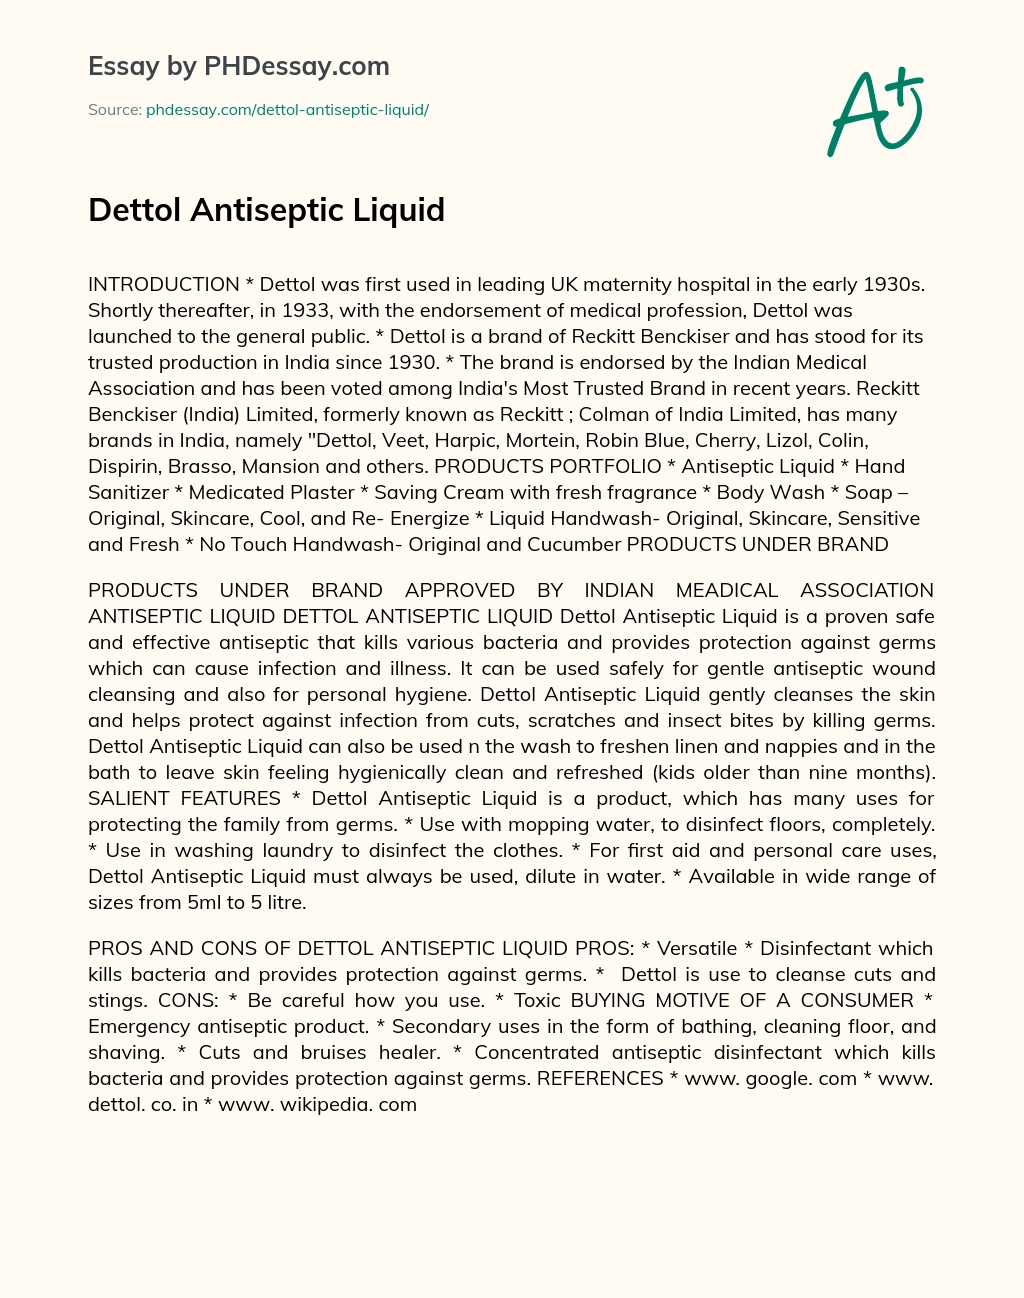 Dettol Antiseptic Liquid essay